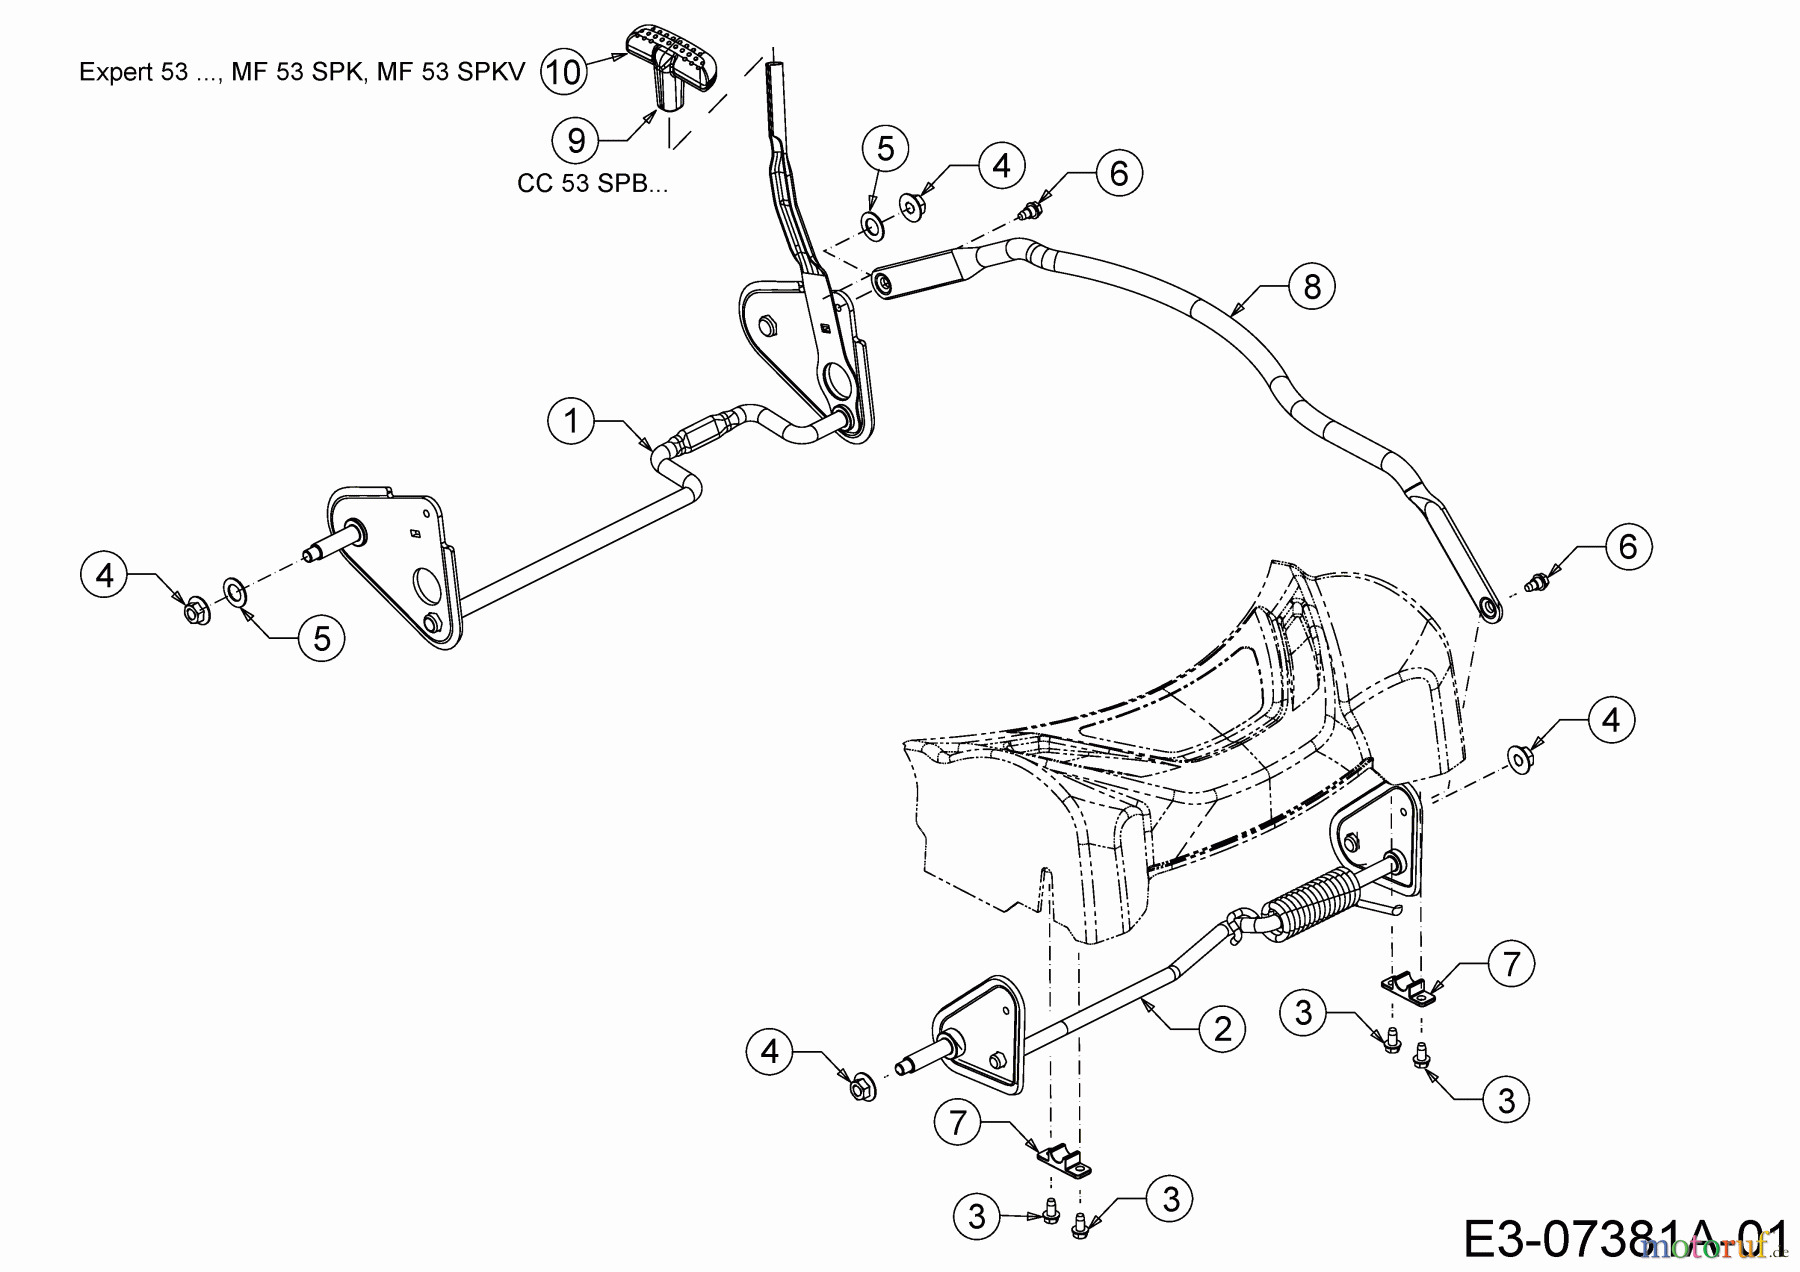  WOLF-Garten Expert Petrol mower self propelled Expert 53 BAV 12BVQ56K650  (2015) Axles, Height adjustment